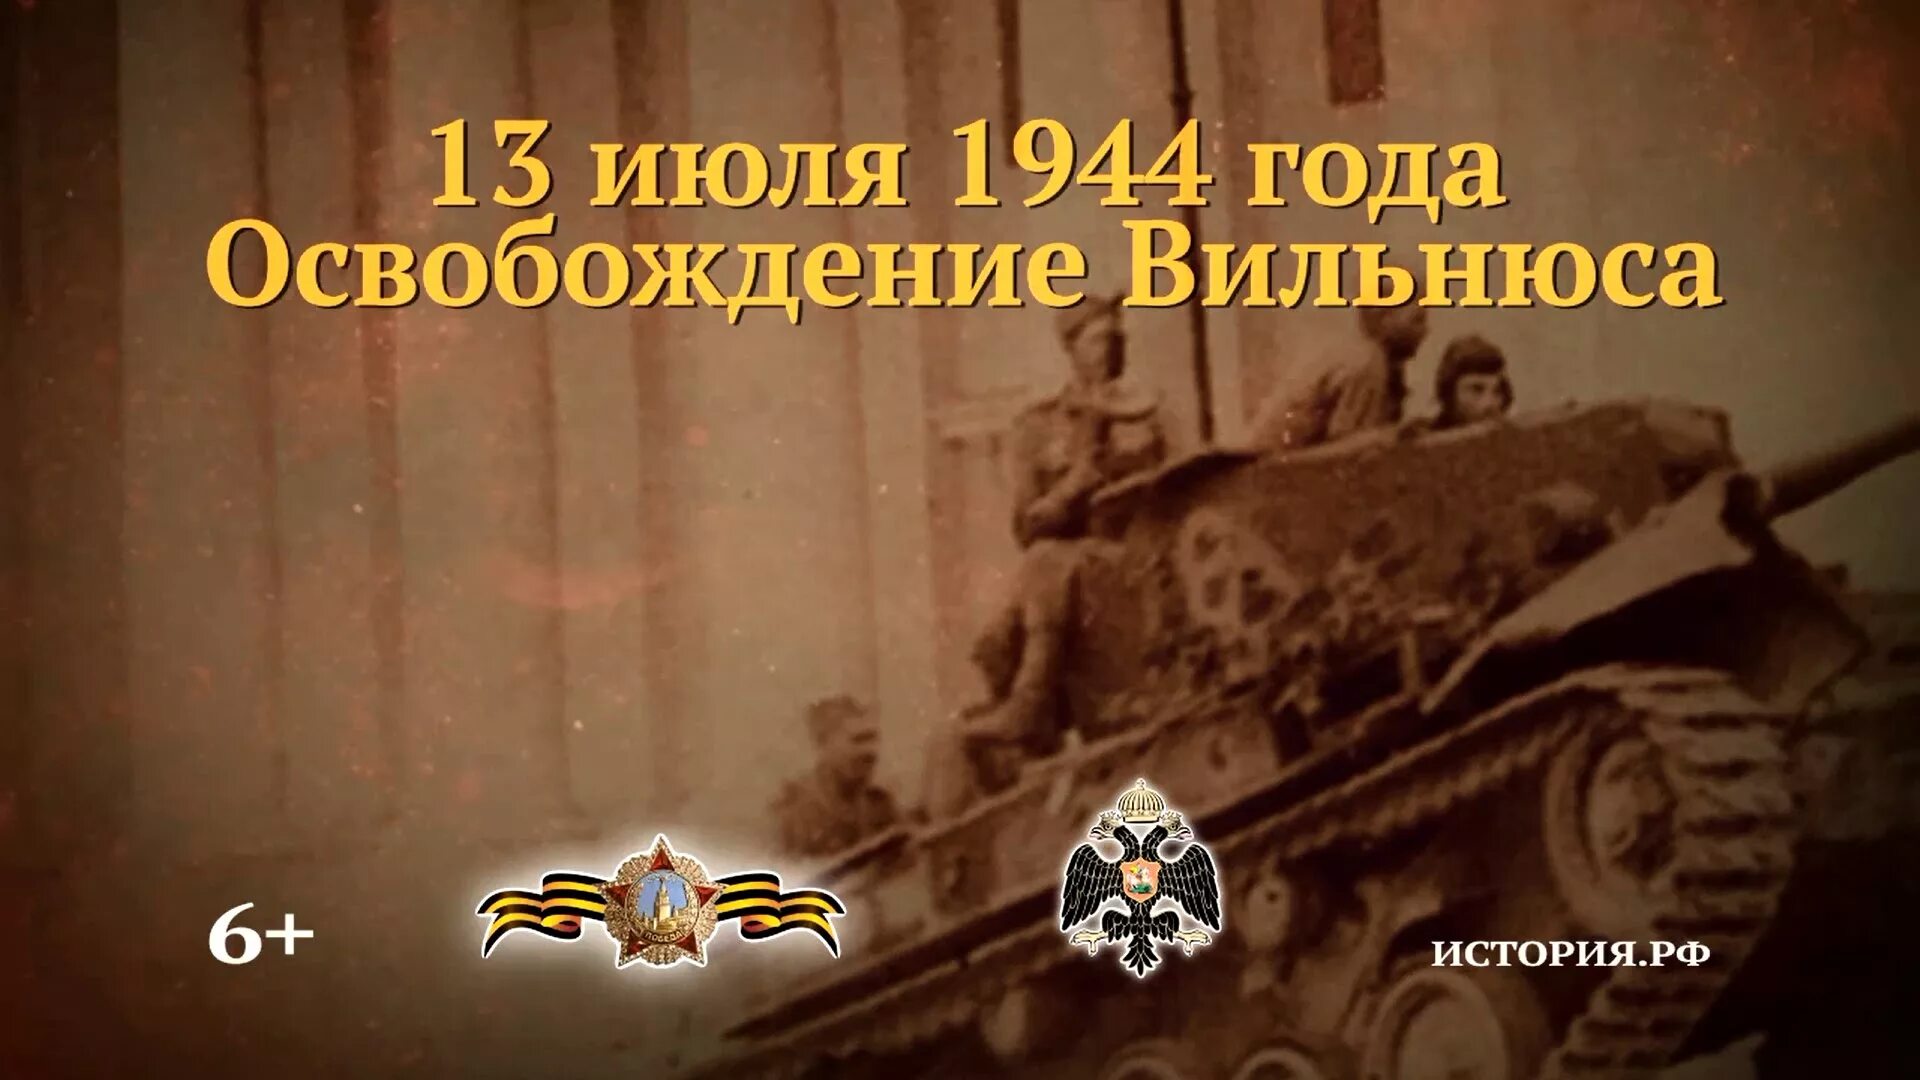 3 июля 1944 г. 13 Июля памятная Дата военной истории России освобождение Вильнюса. Освобождение Вильнюса 1944. Освобождение Вильнюса 13 июля 1944. Освобождение Вильнюса от немецко-фашистских захватчиков 1944г.